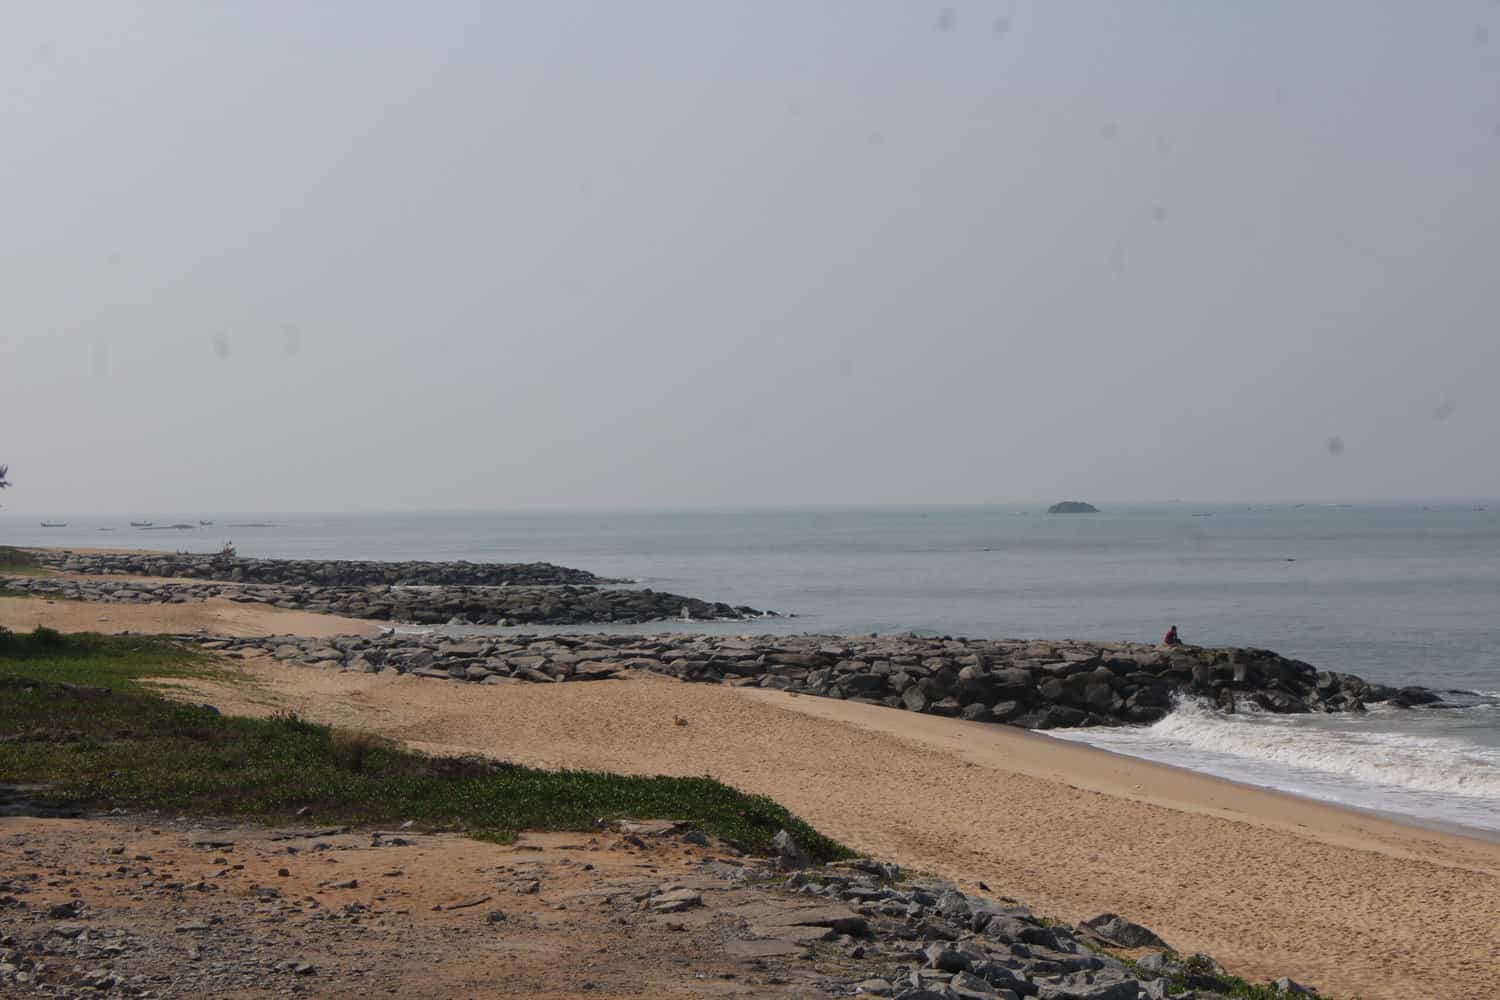 Maravanthe beach, Karnataka